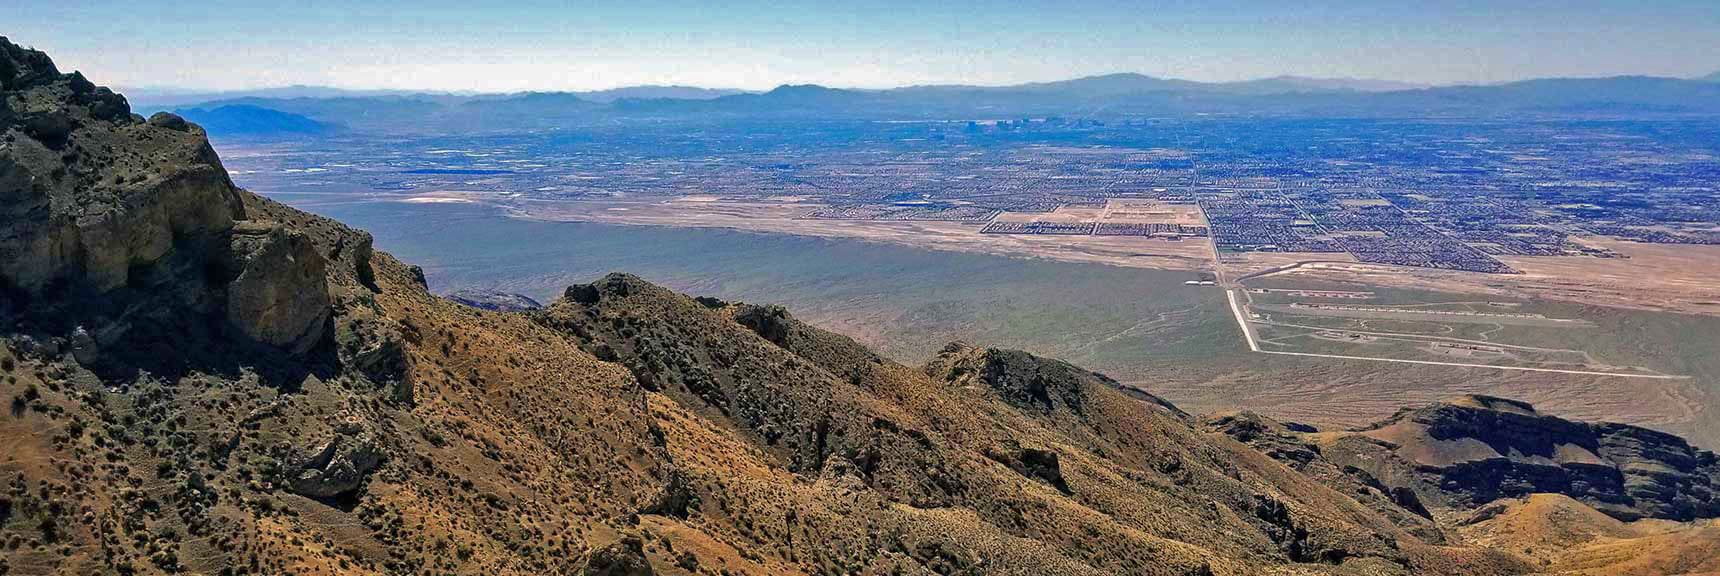 Gass Peak Mid Summit Ridge North of Las Vegas, Nevada